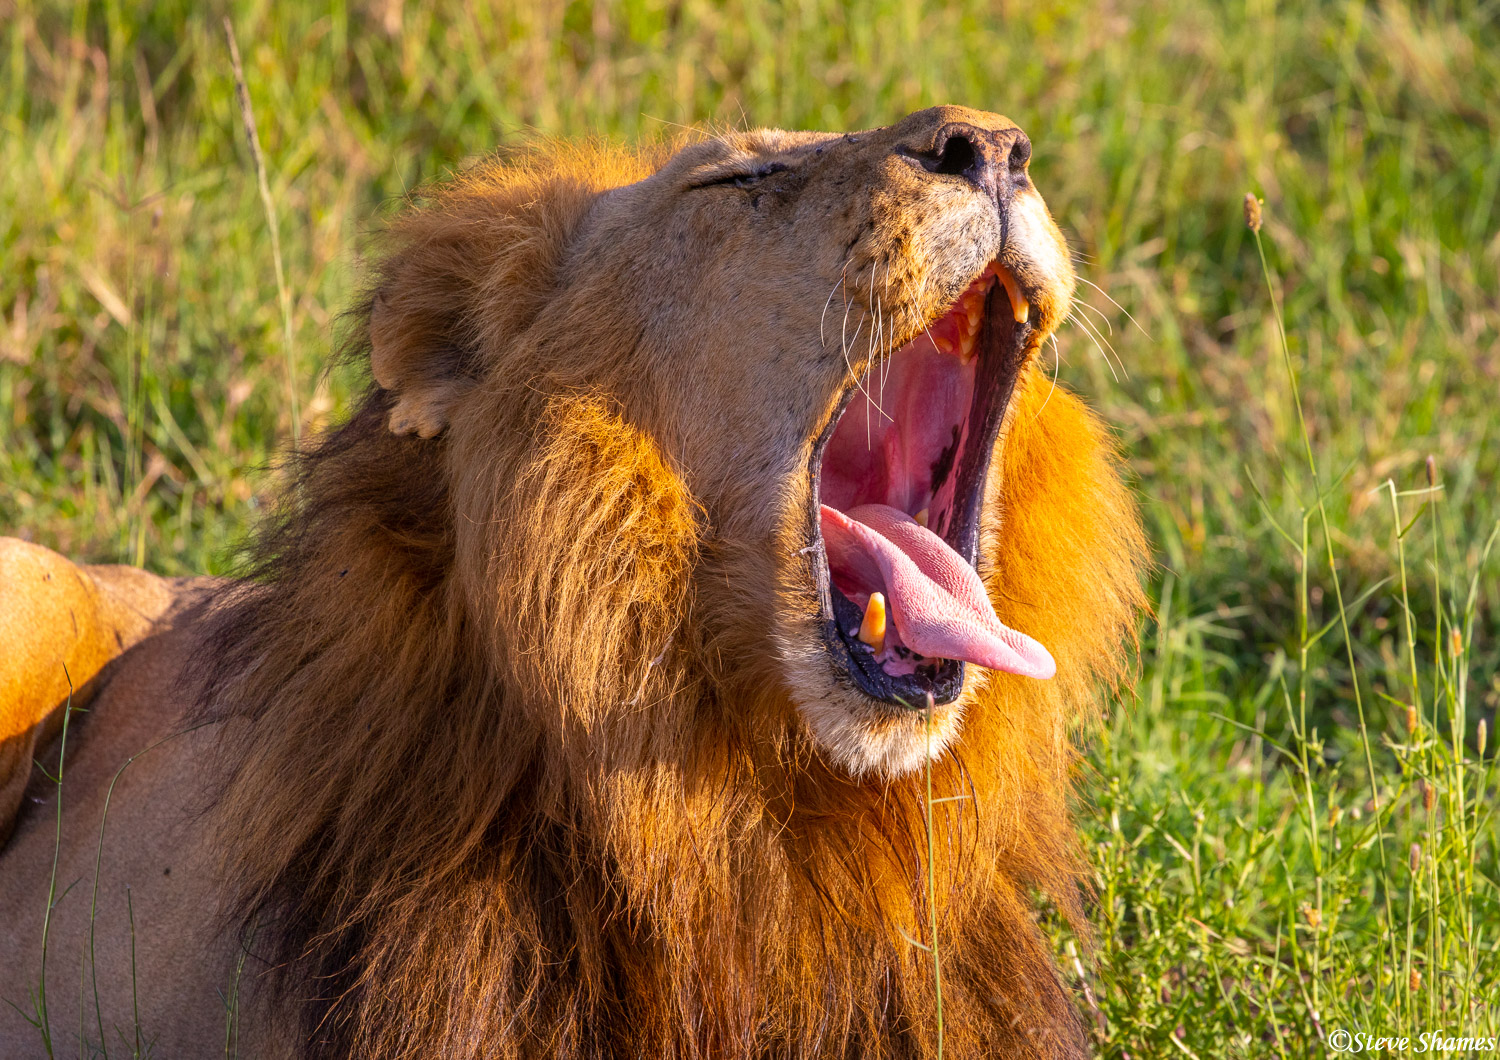 A big yawn for a big lion.